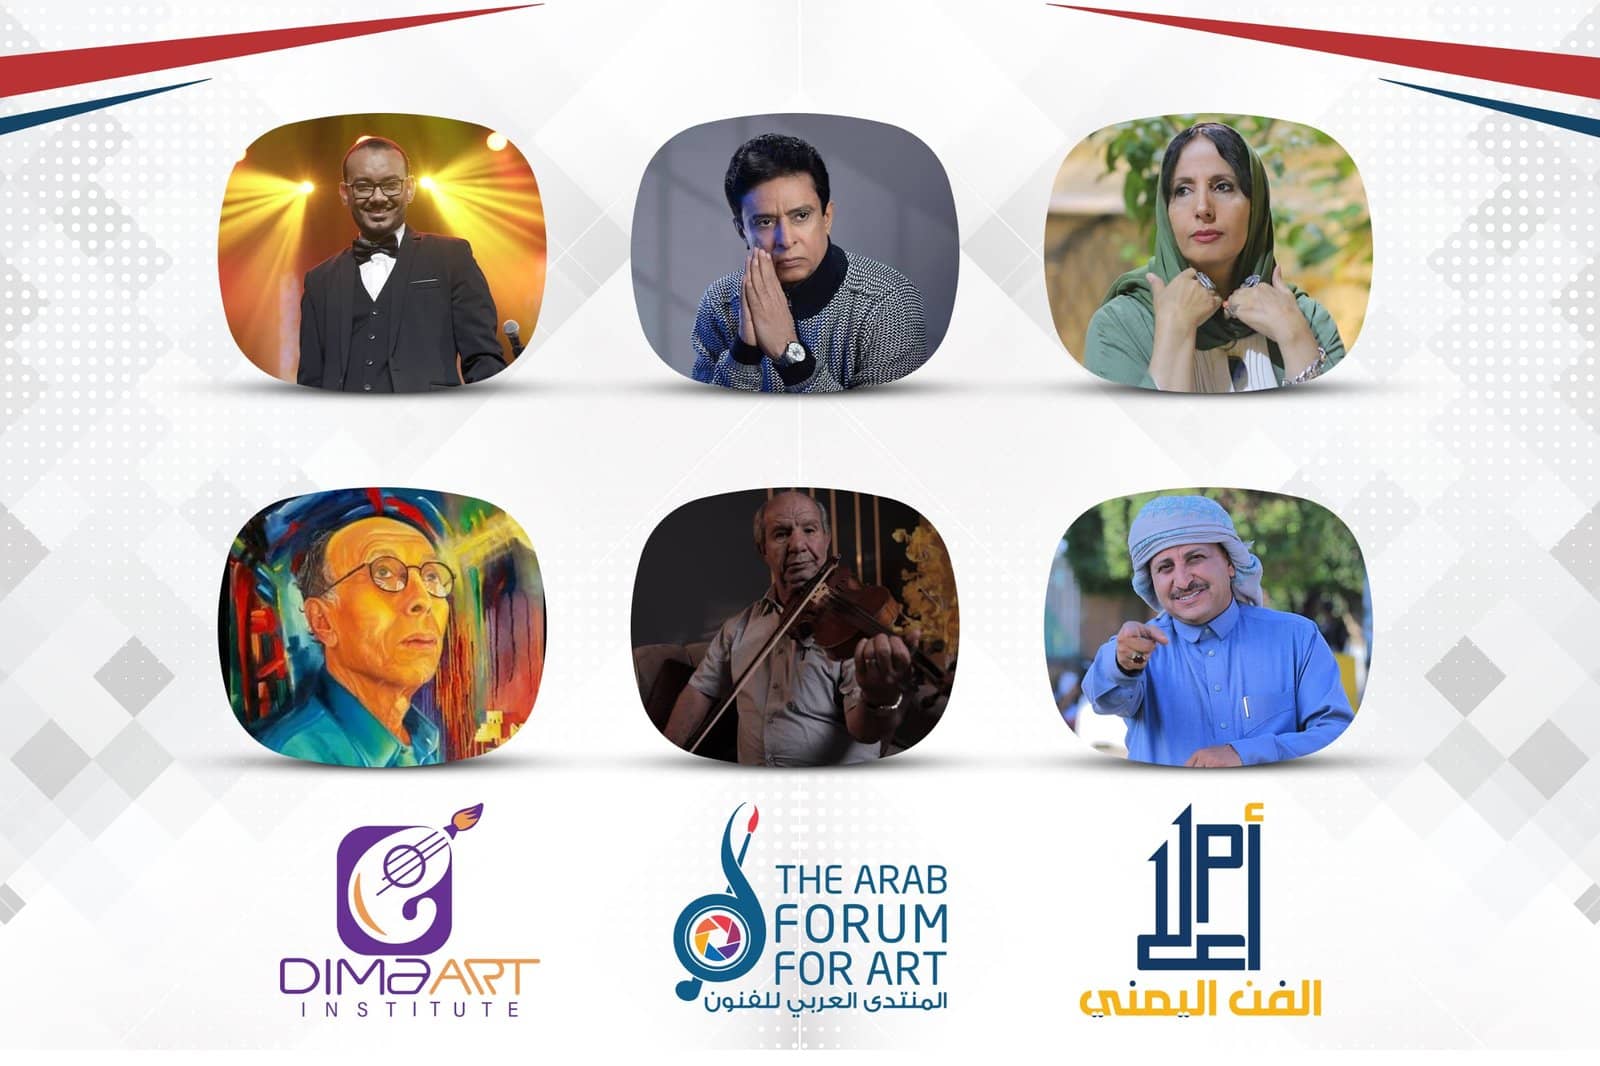 المنتدى العربي يطلق حملة "أعلام الفن اليمني"